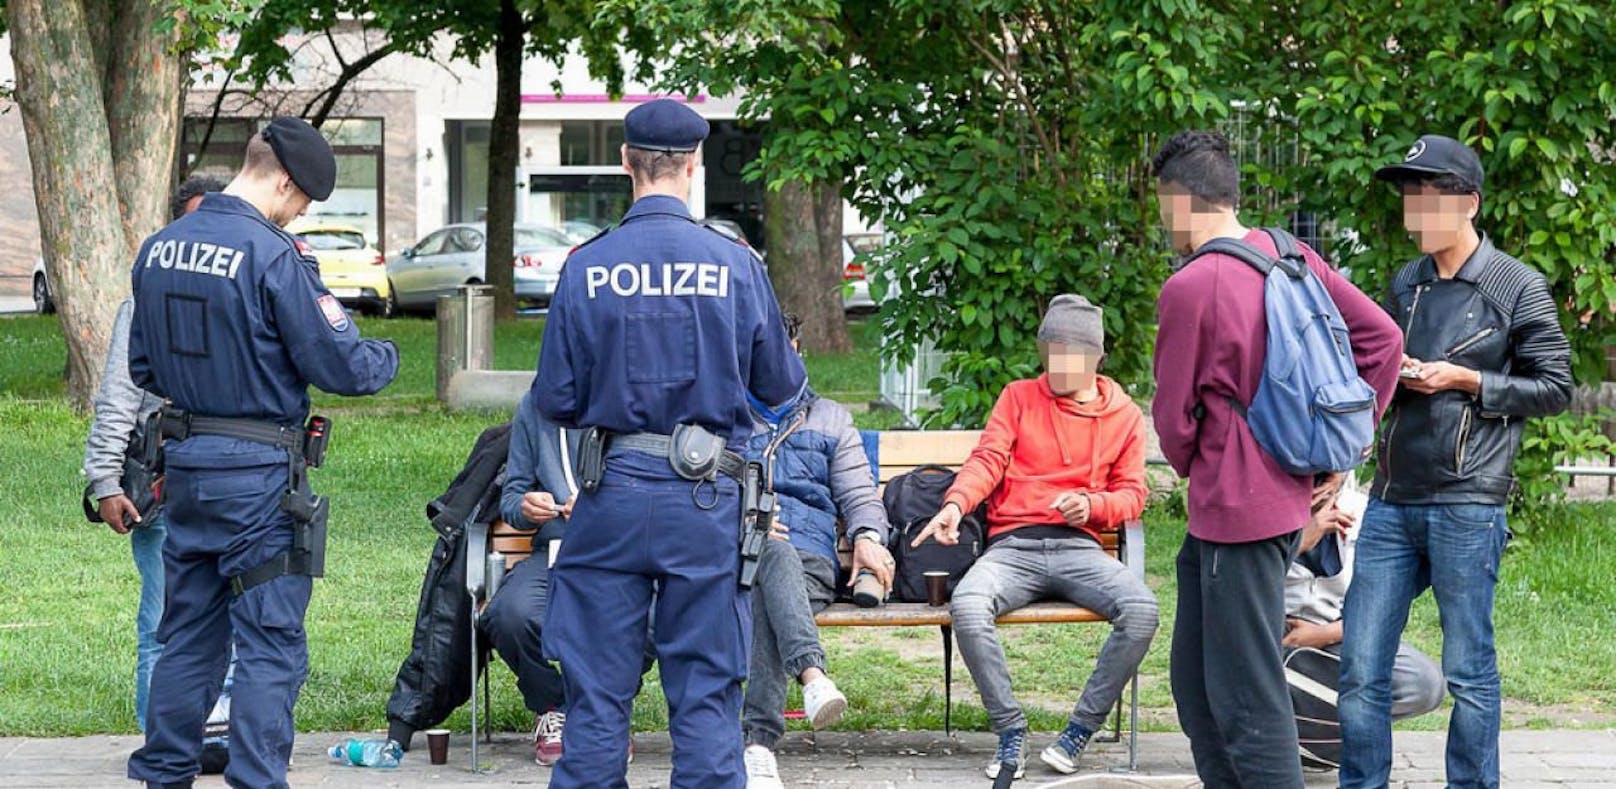 Polizeikontrollen sind im Hessenpark alltäglich. 